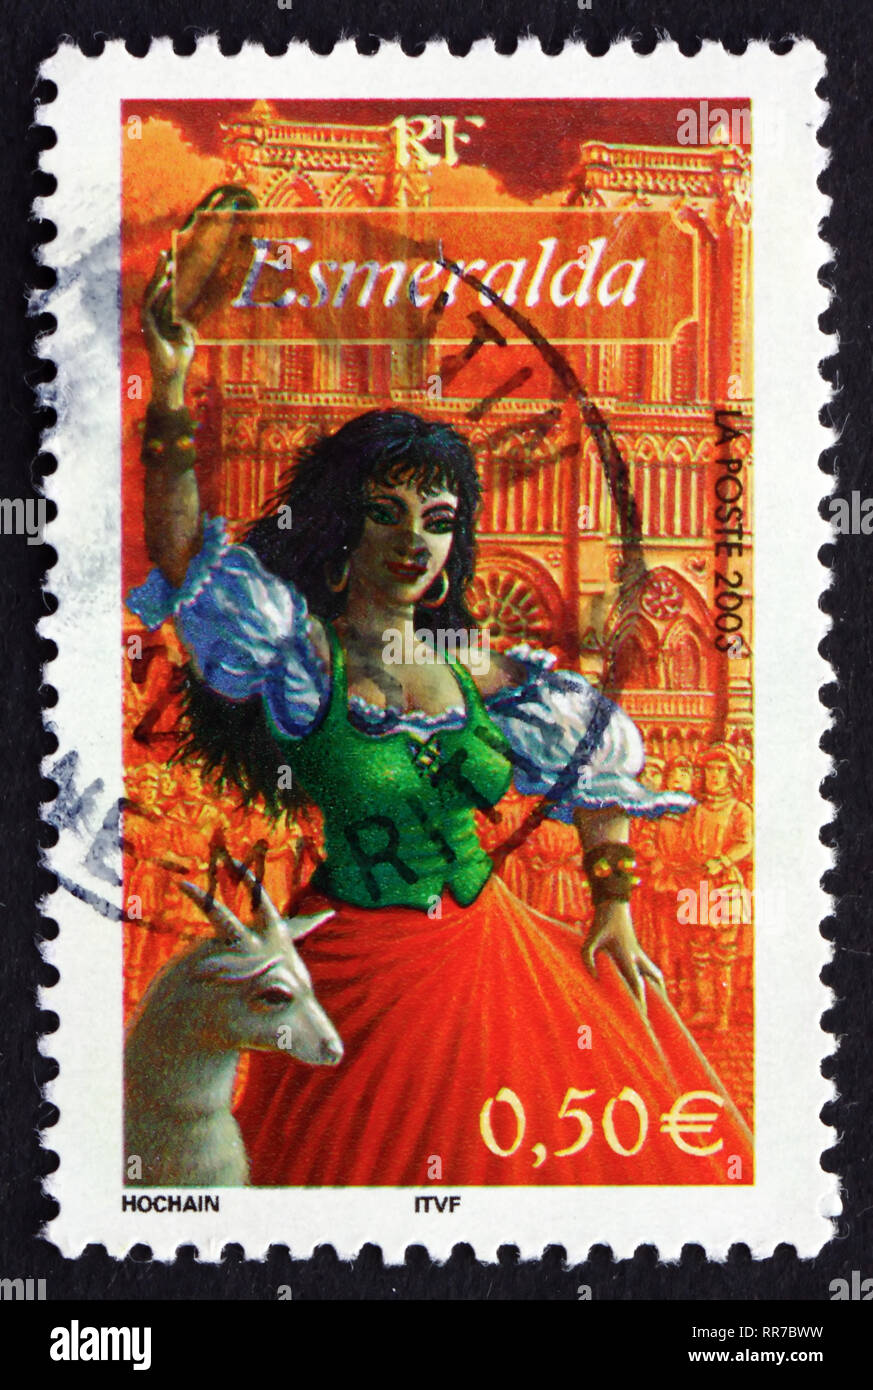 Francia - circa 2003: un timbro stampato in Francia mostra Esmeralda, da Notre Dame de Paris, da Victir Hugo, carattere dalla letteratura, circa 2003 Foto Stock